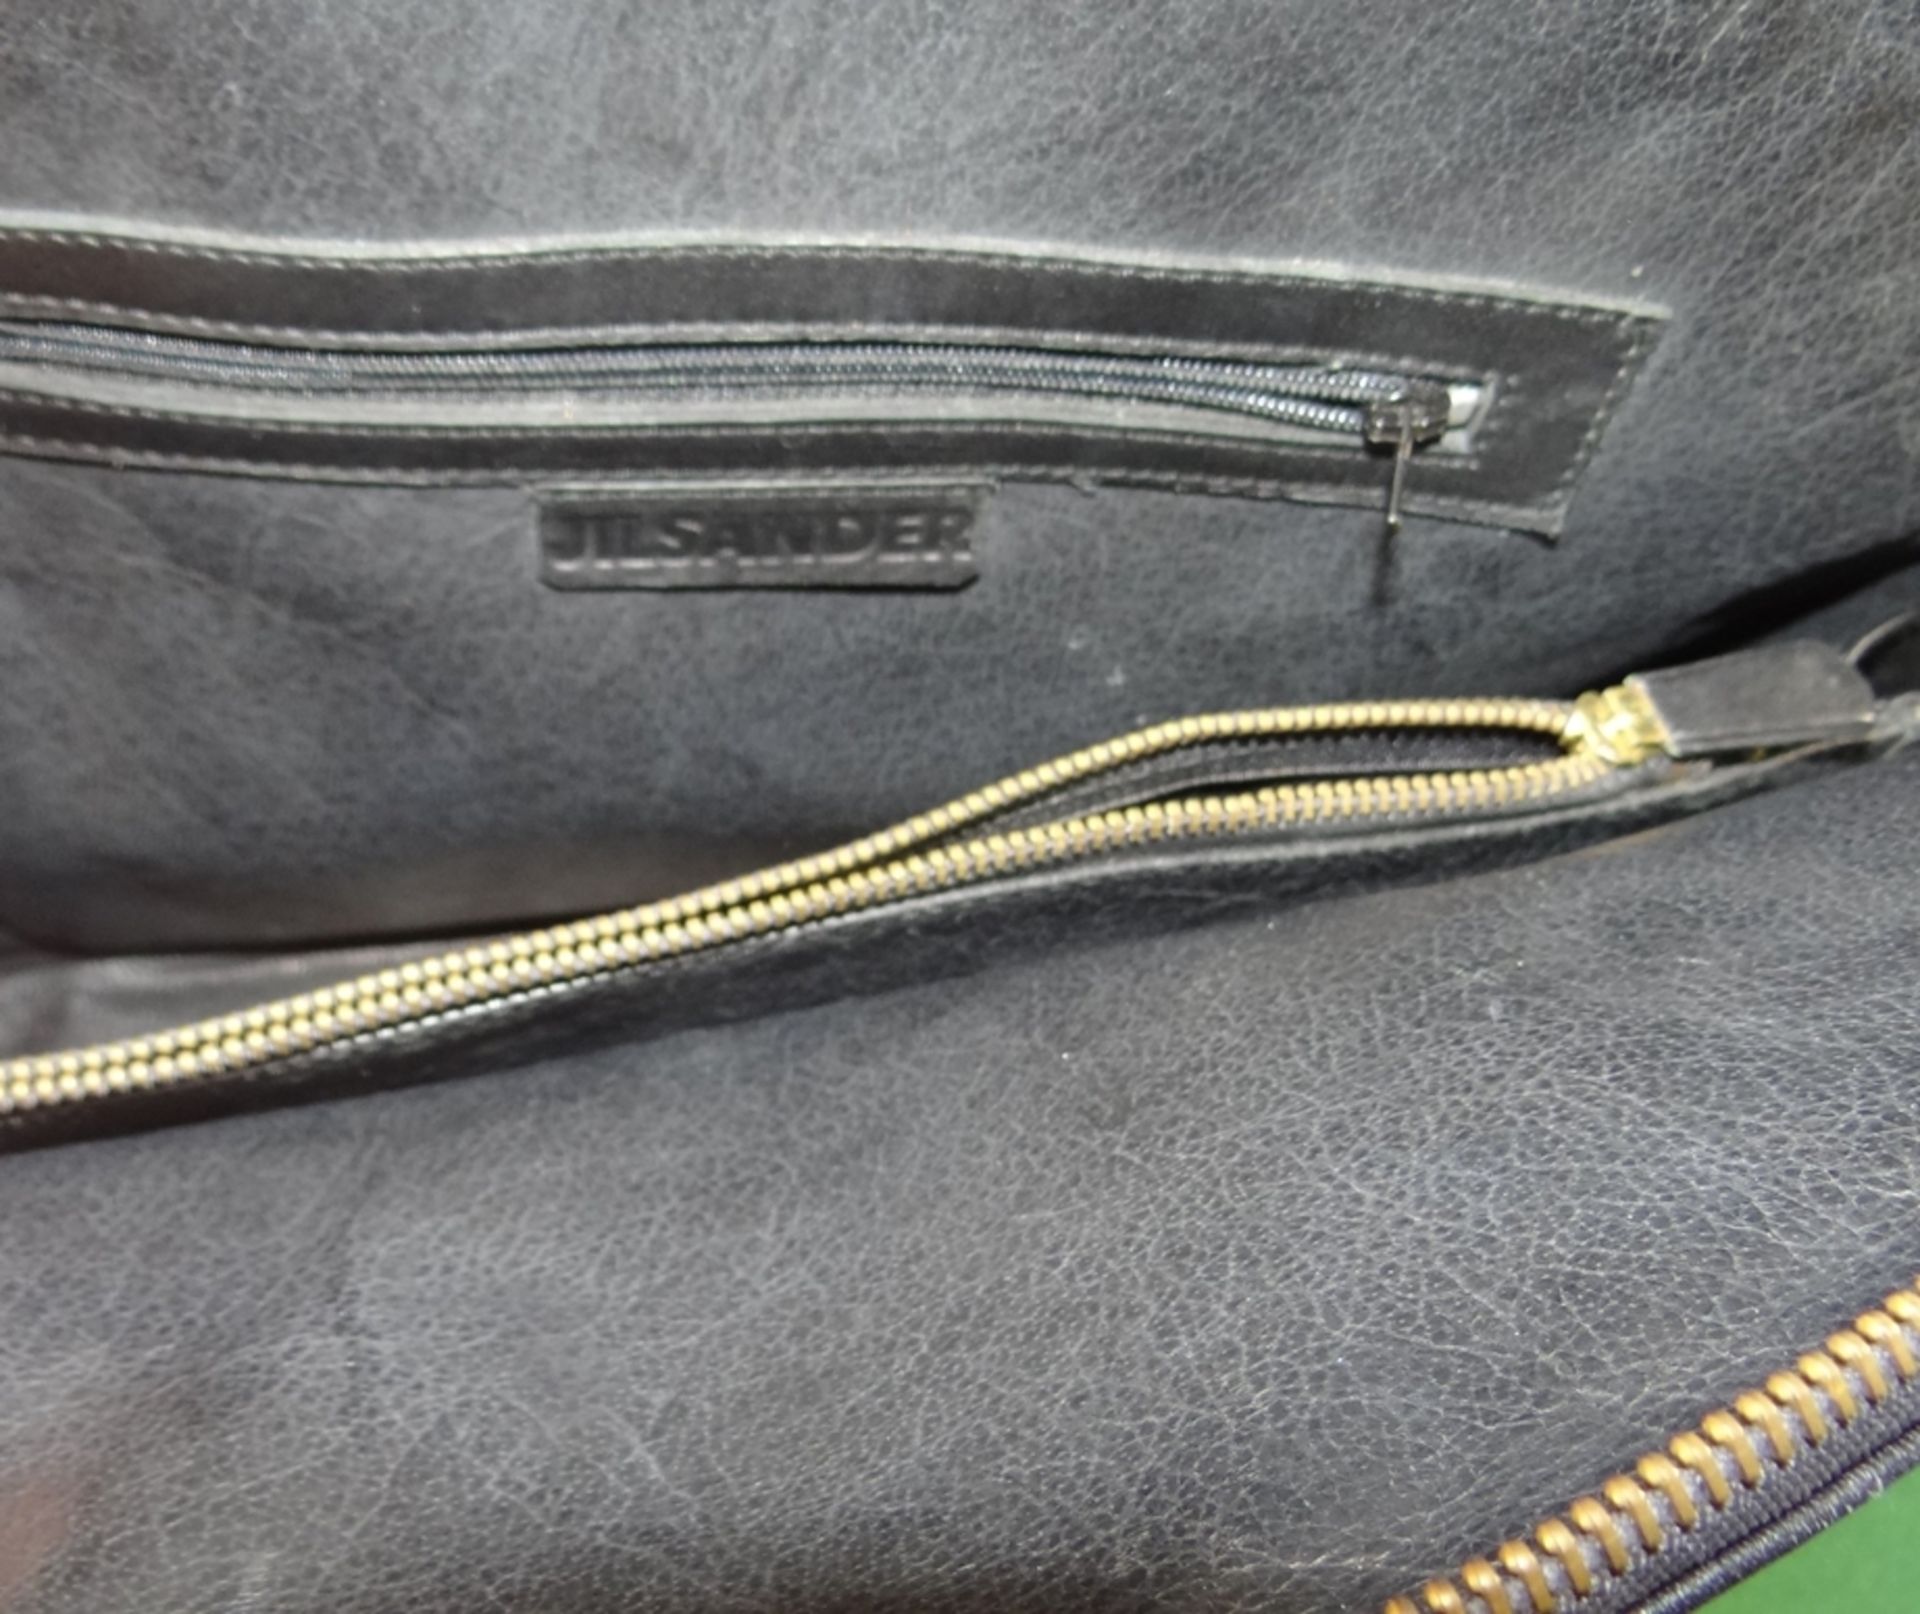 Vintage Damenhandtasche von Jill Sander, Leder, gut erhalten, 28x37 cm - Bild 6 aus 8